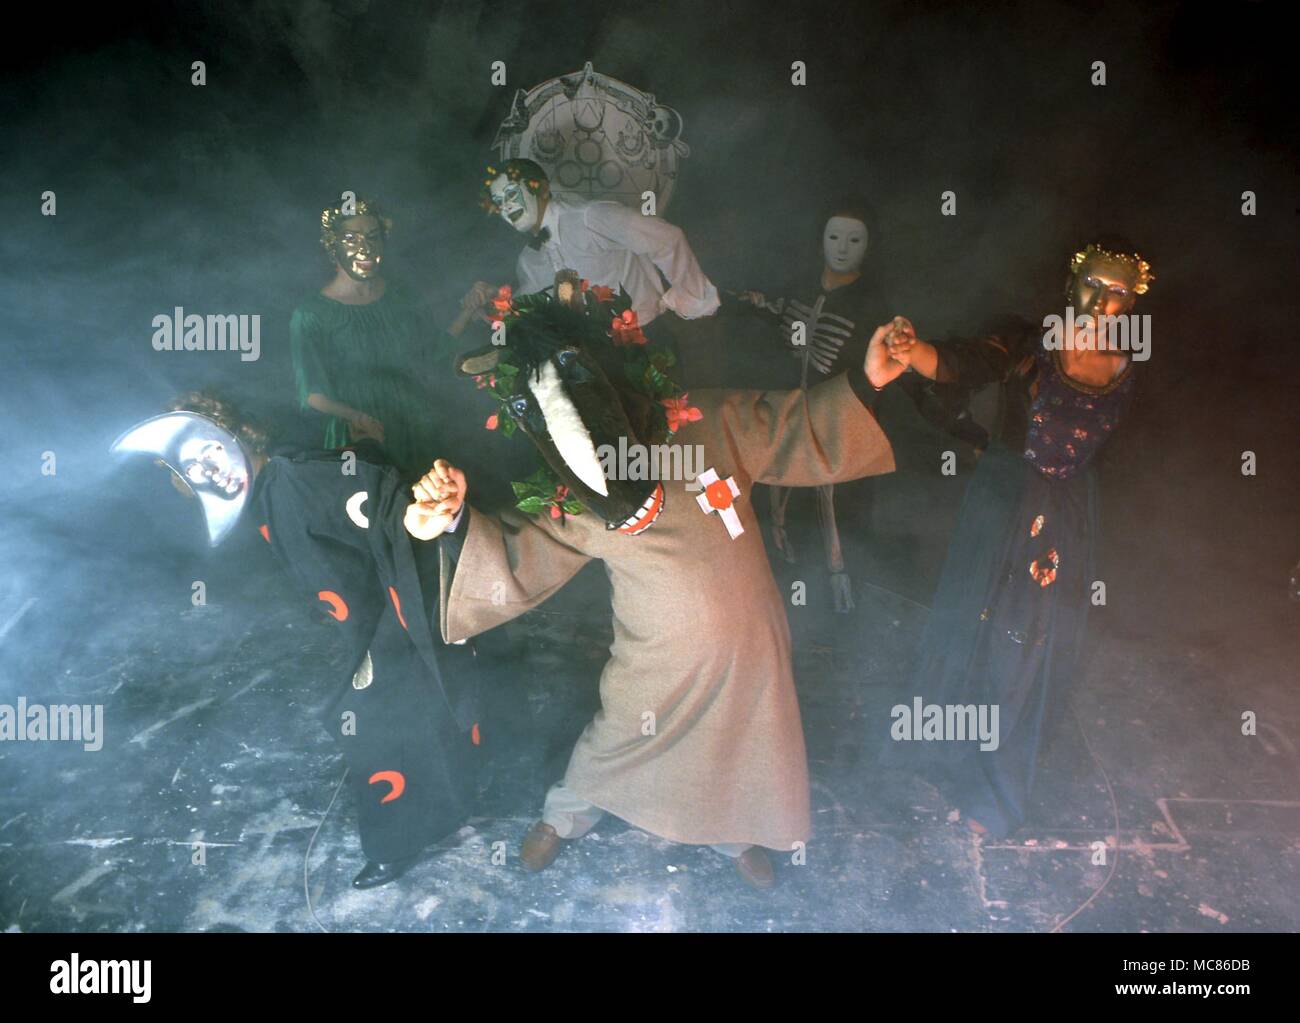 La sorcellerie groupe de personnes dans une sorcellerie burlesque, vêtus de costumes bizarres et des masques, la danse à l'intérieur d'un cercle magique Banque D'Images